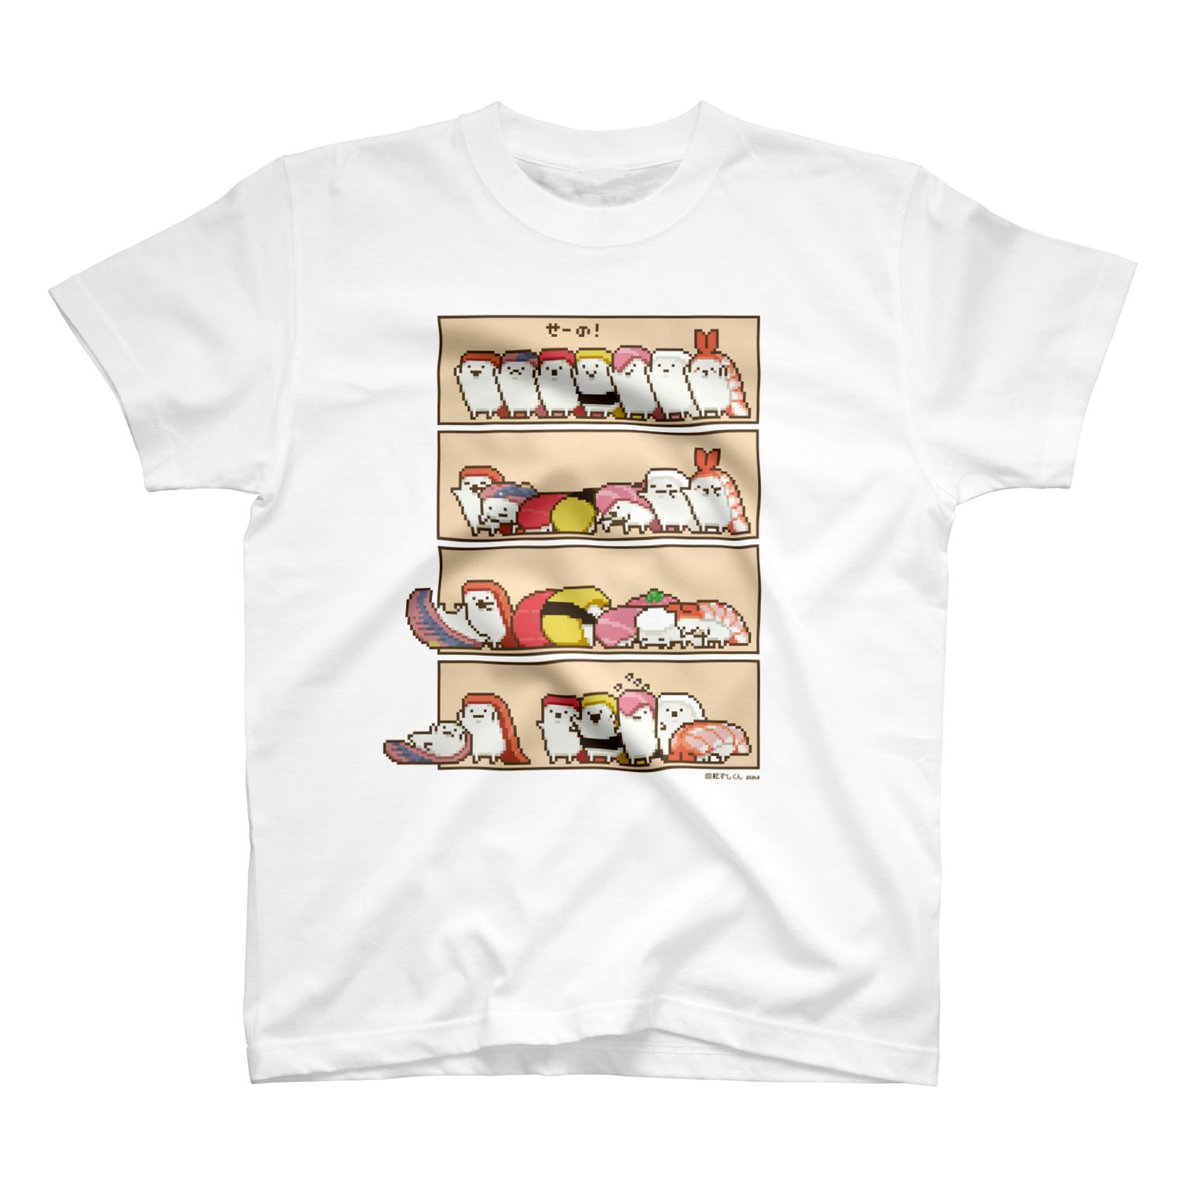 「SUZURIでTシャツやパーカー類がセール中です!3月19日(日) 23:59ま」|asahaのイラスト